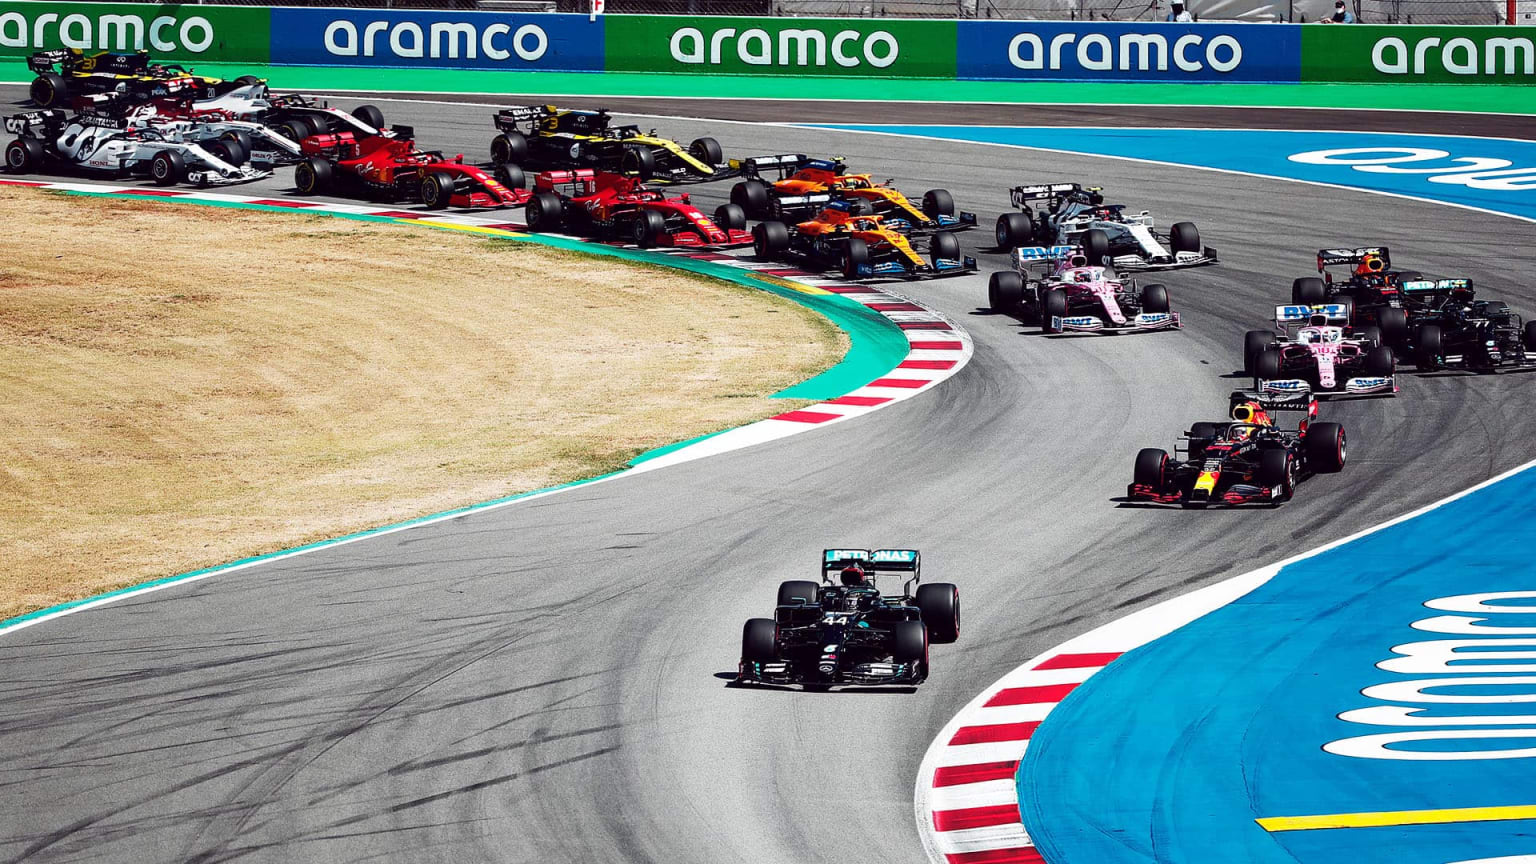 Spanish Grand Prix 2021